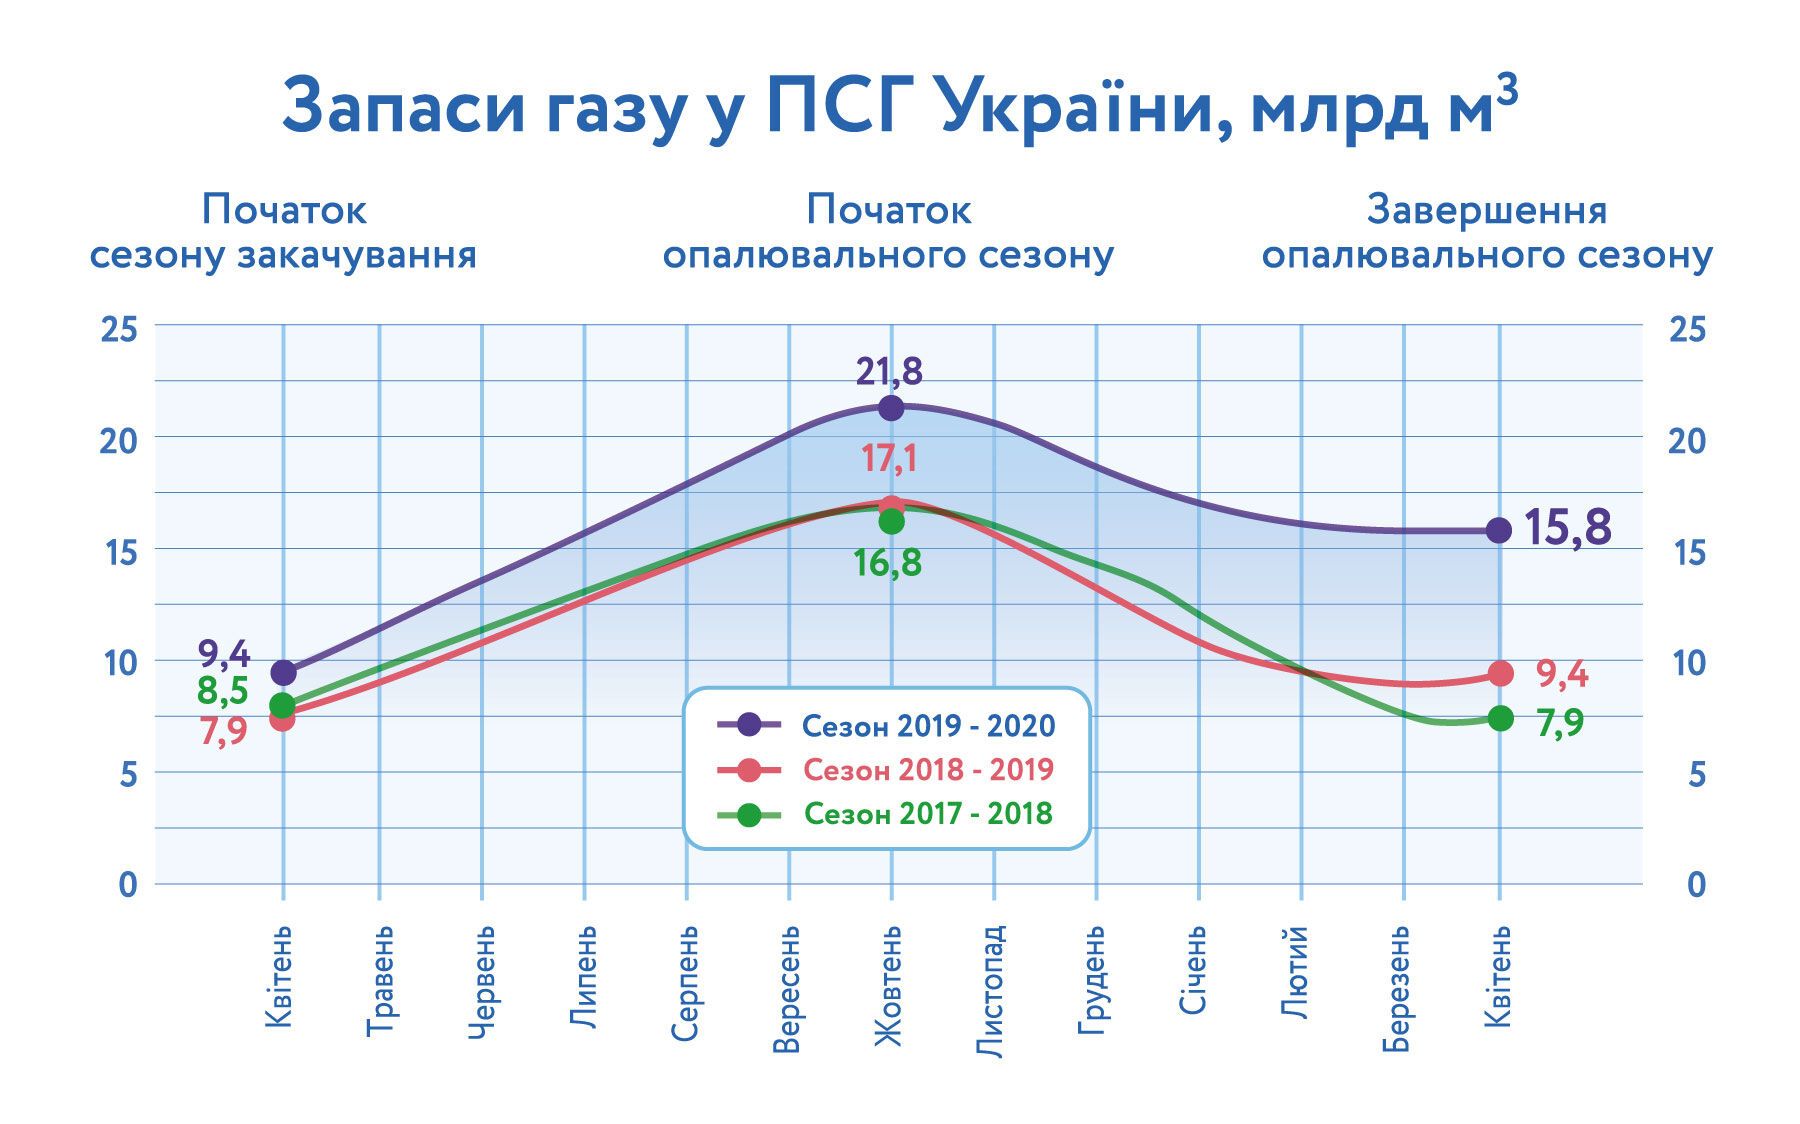 Путина "поставили в стойло": цены на нефть обрушились ниже нуля, но украинцы продолжат платить